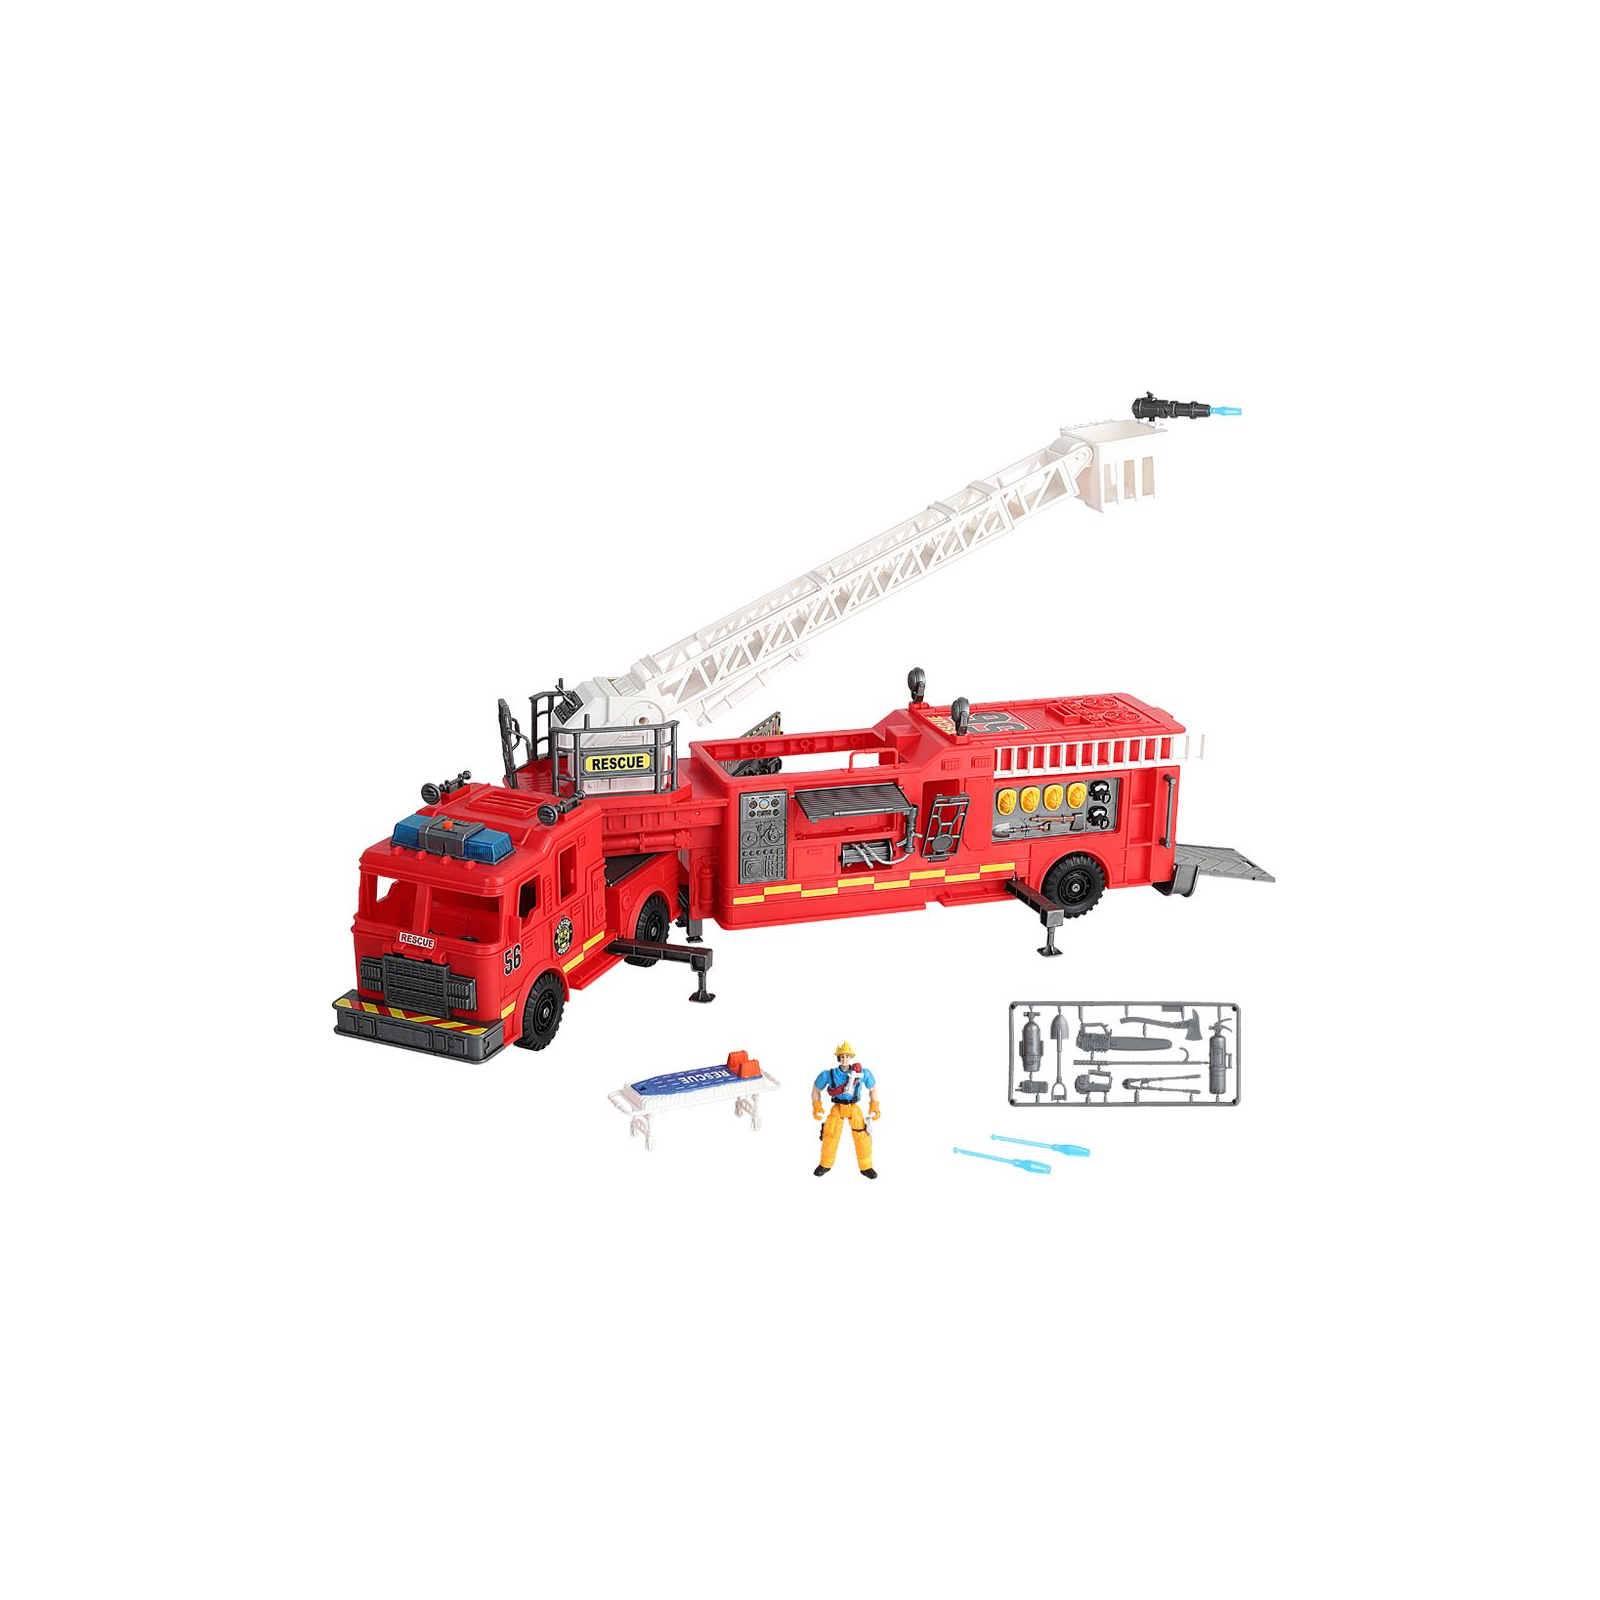 Спецтехника Motor Shop Спасатели Giant Fire Engine Trailer Гигантская пожарная машина (546058) изображение 4